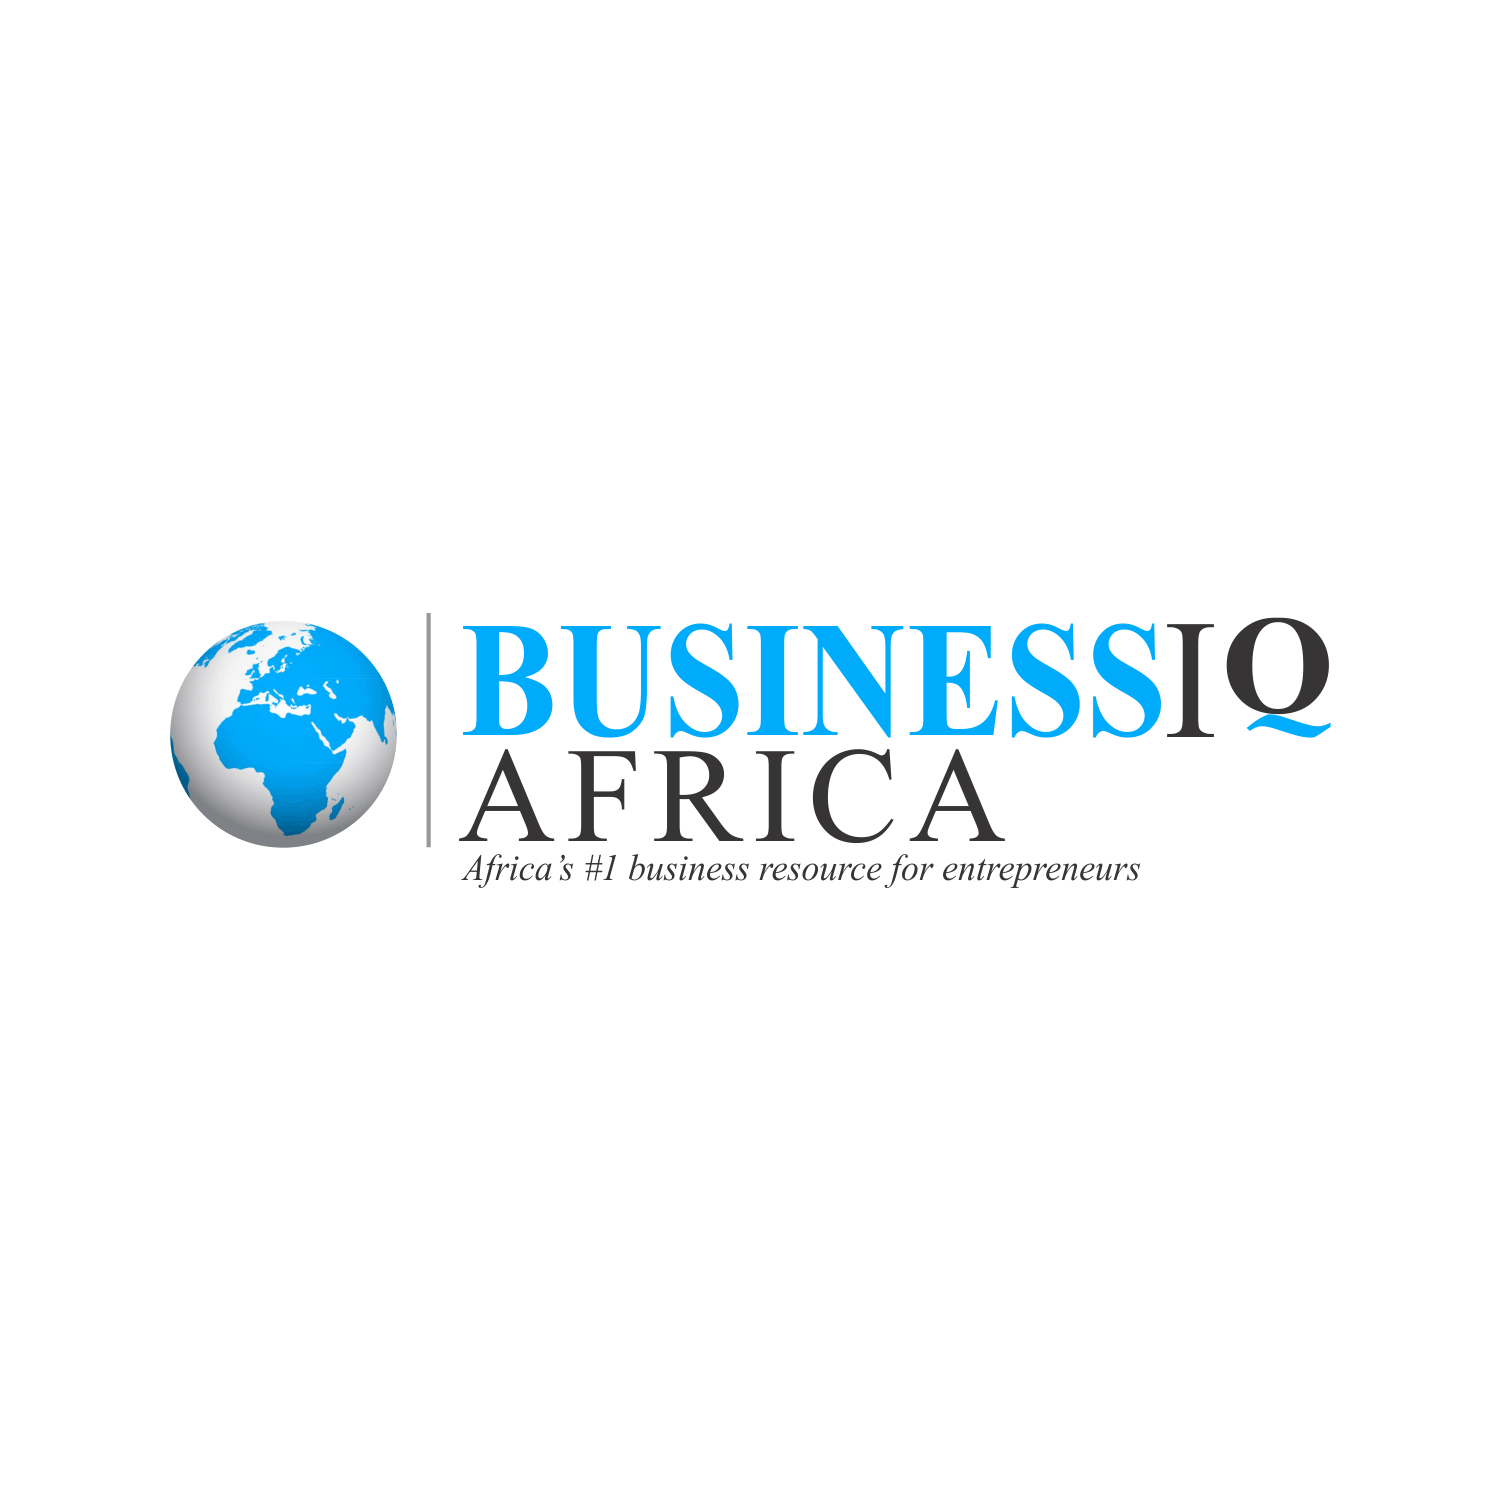 BusinessIQ Africa